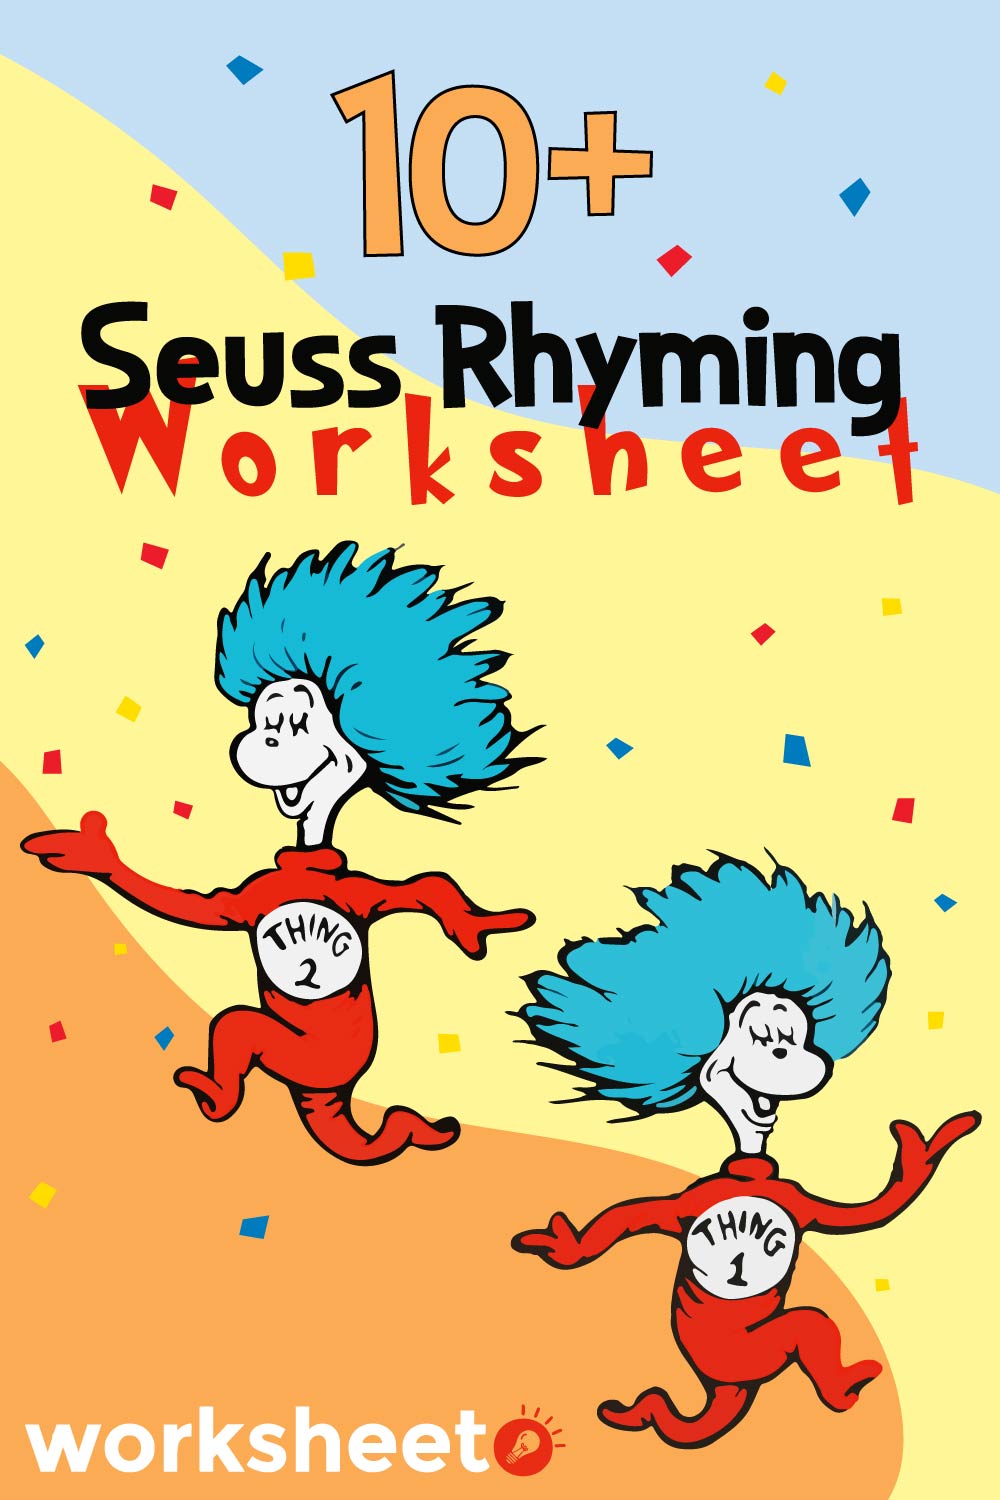 18 Images of Seuss Rhyming Worksheet